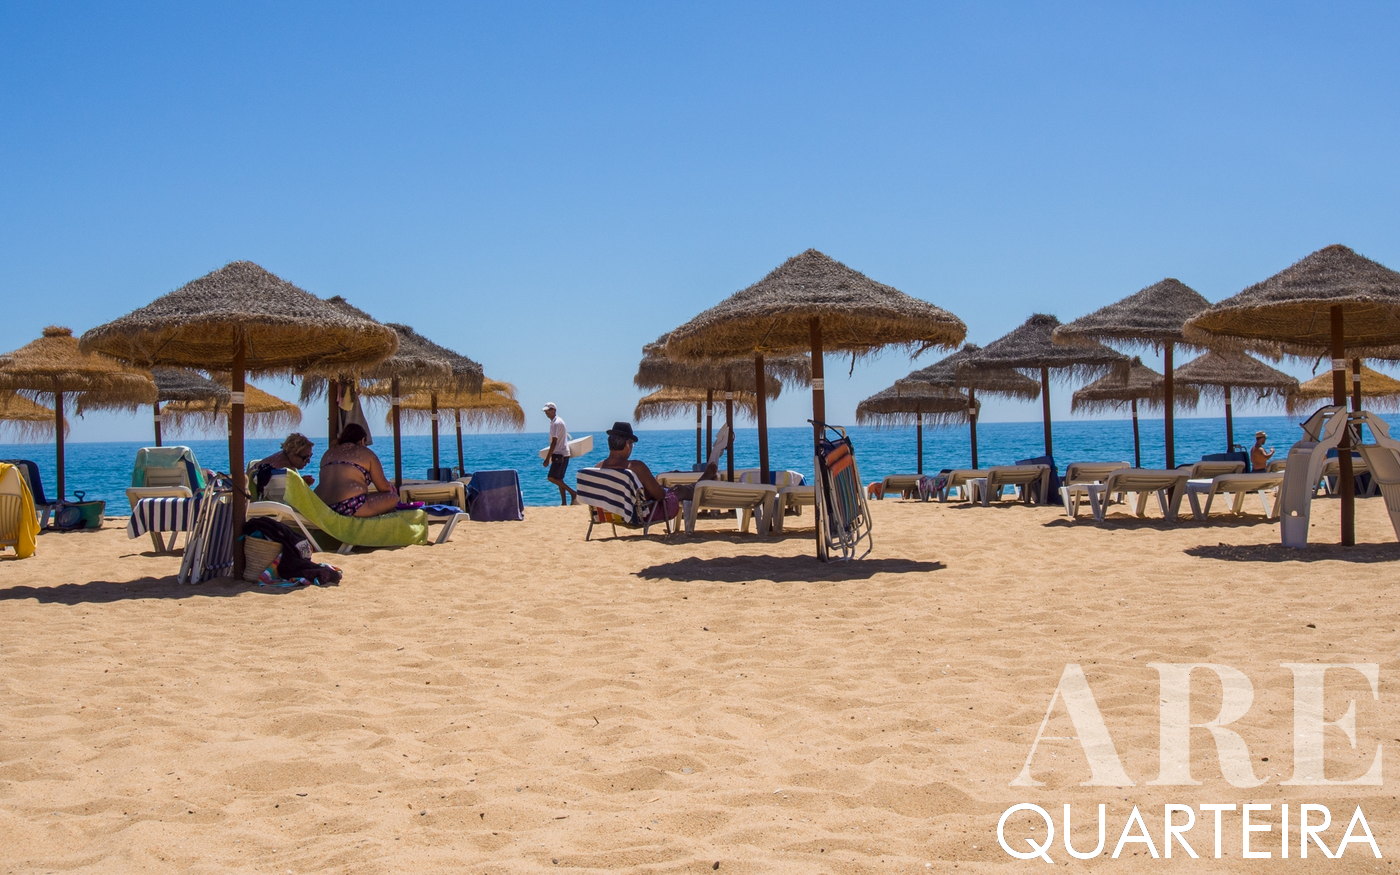 El verano en la playa de Quarteira es una estampa de tranquilidad marinera. 